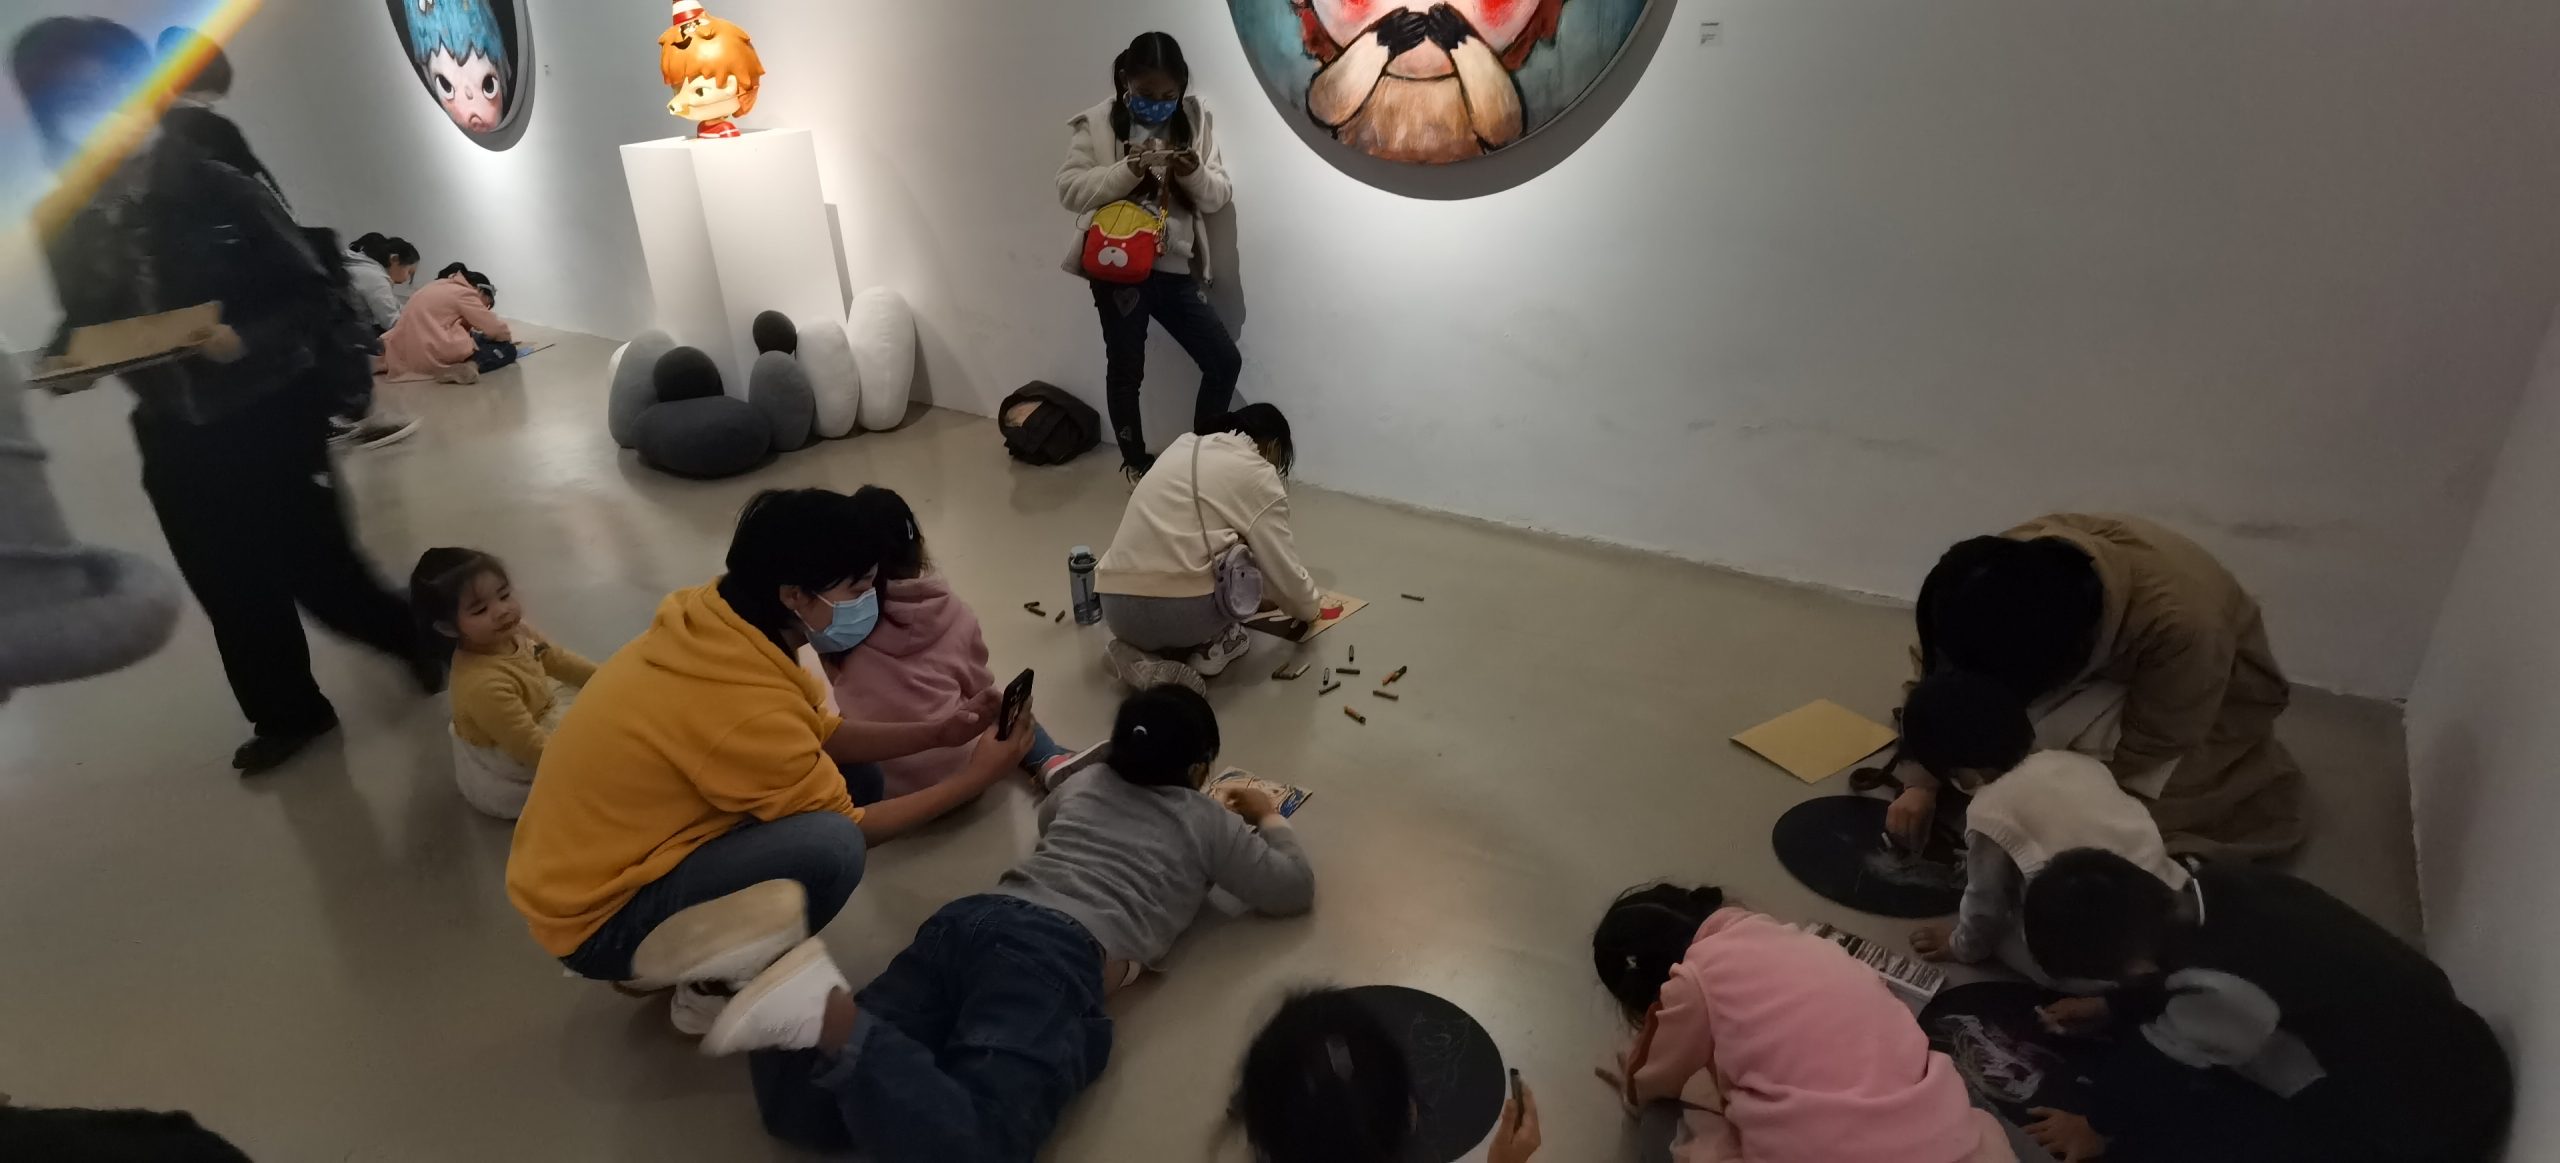 【2021年10月】墨境轩组织学生走进“松美术馆，泡泡玛特的Hirono（小野）线下艺术展览” 活动 第8张